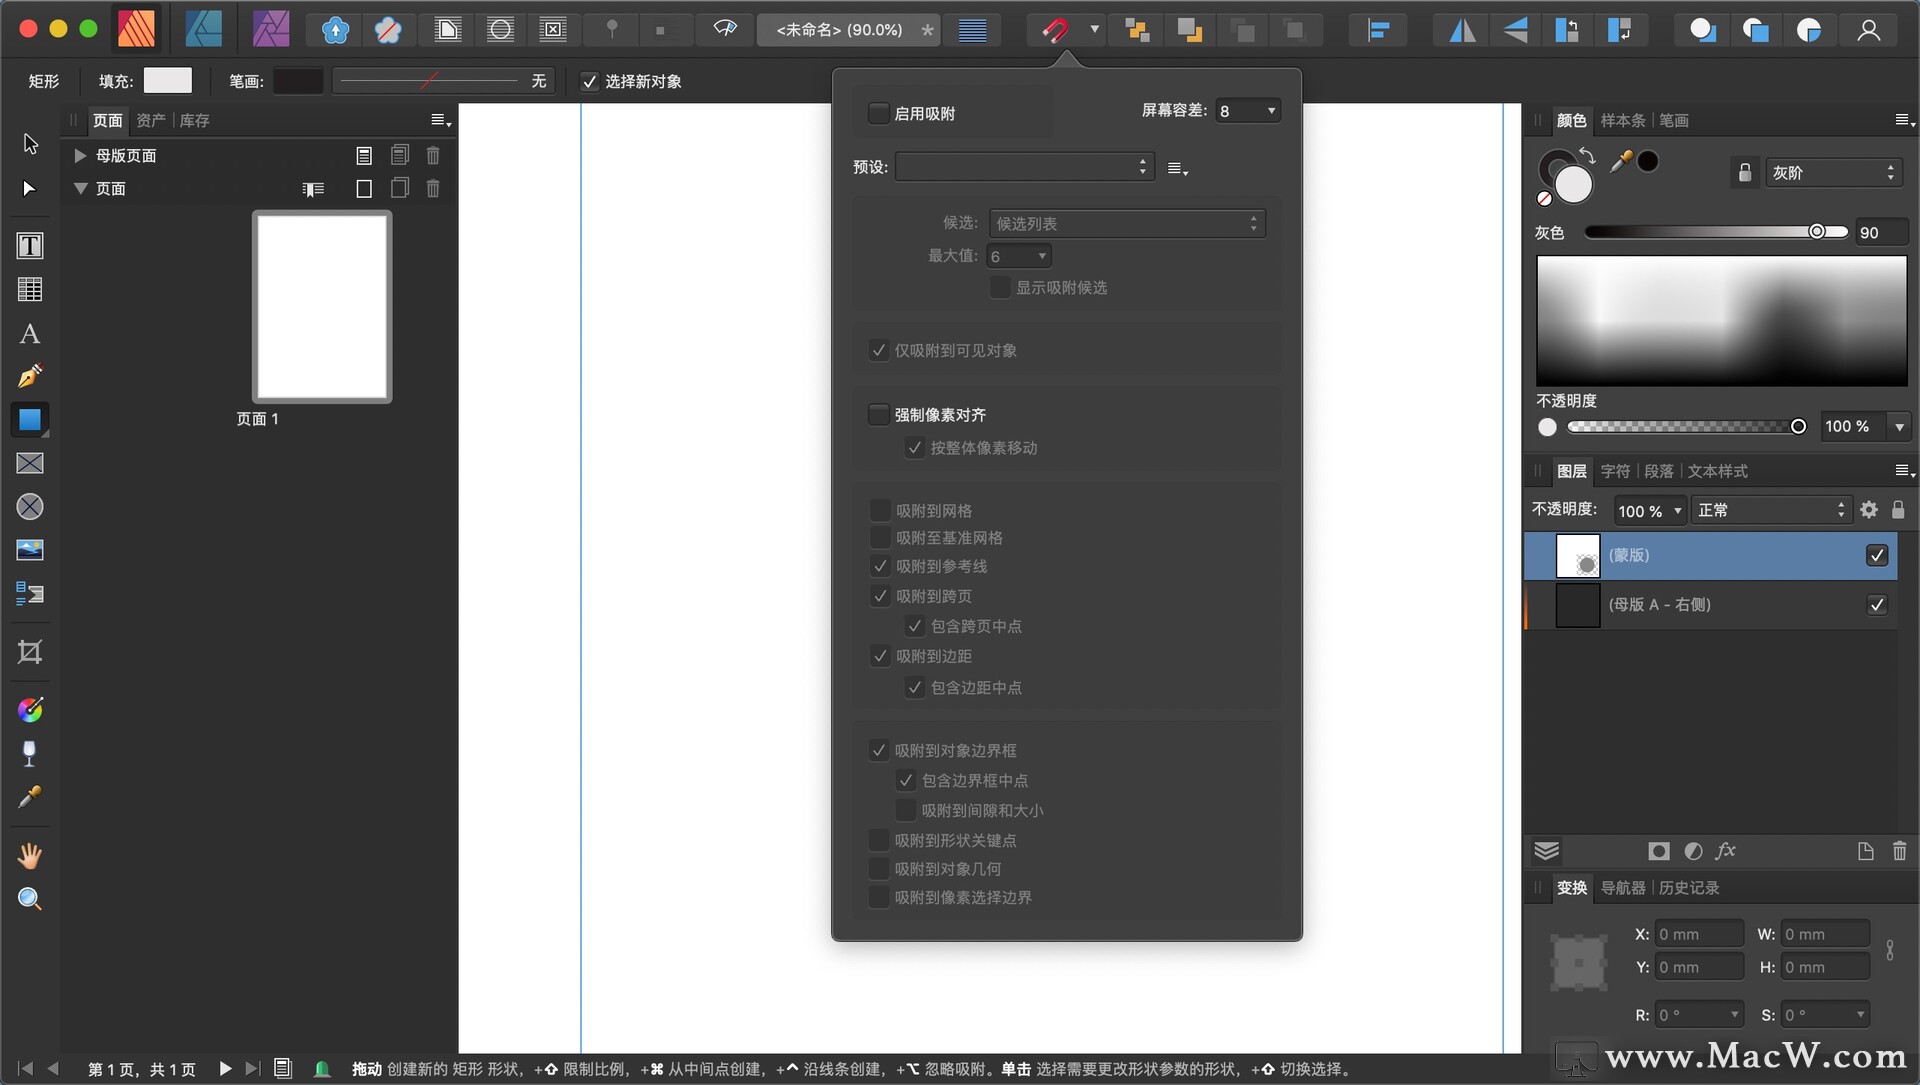 Mac桌面排版工具 Affinity Publisher Beta 1.10.0.1127中文测试版 - 图2